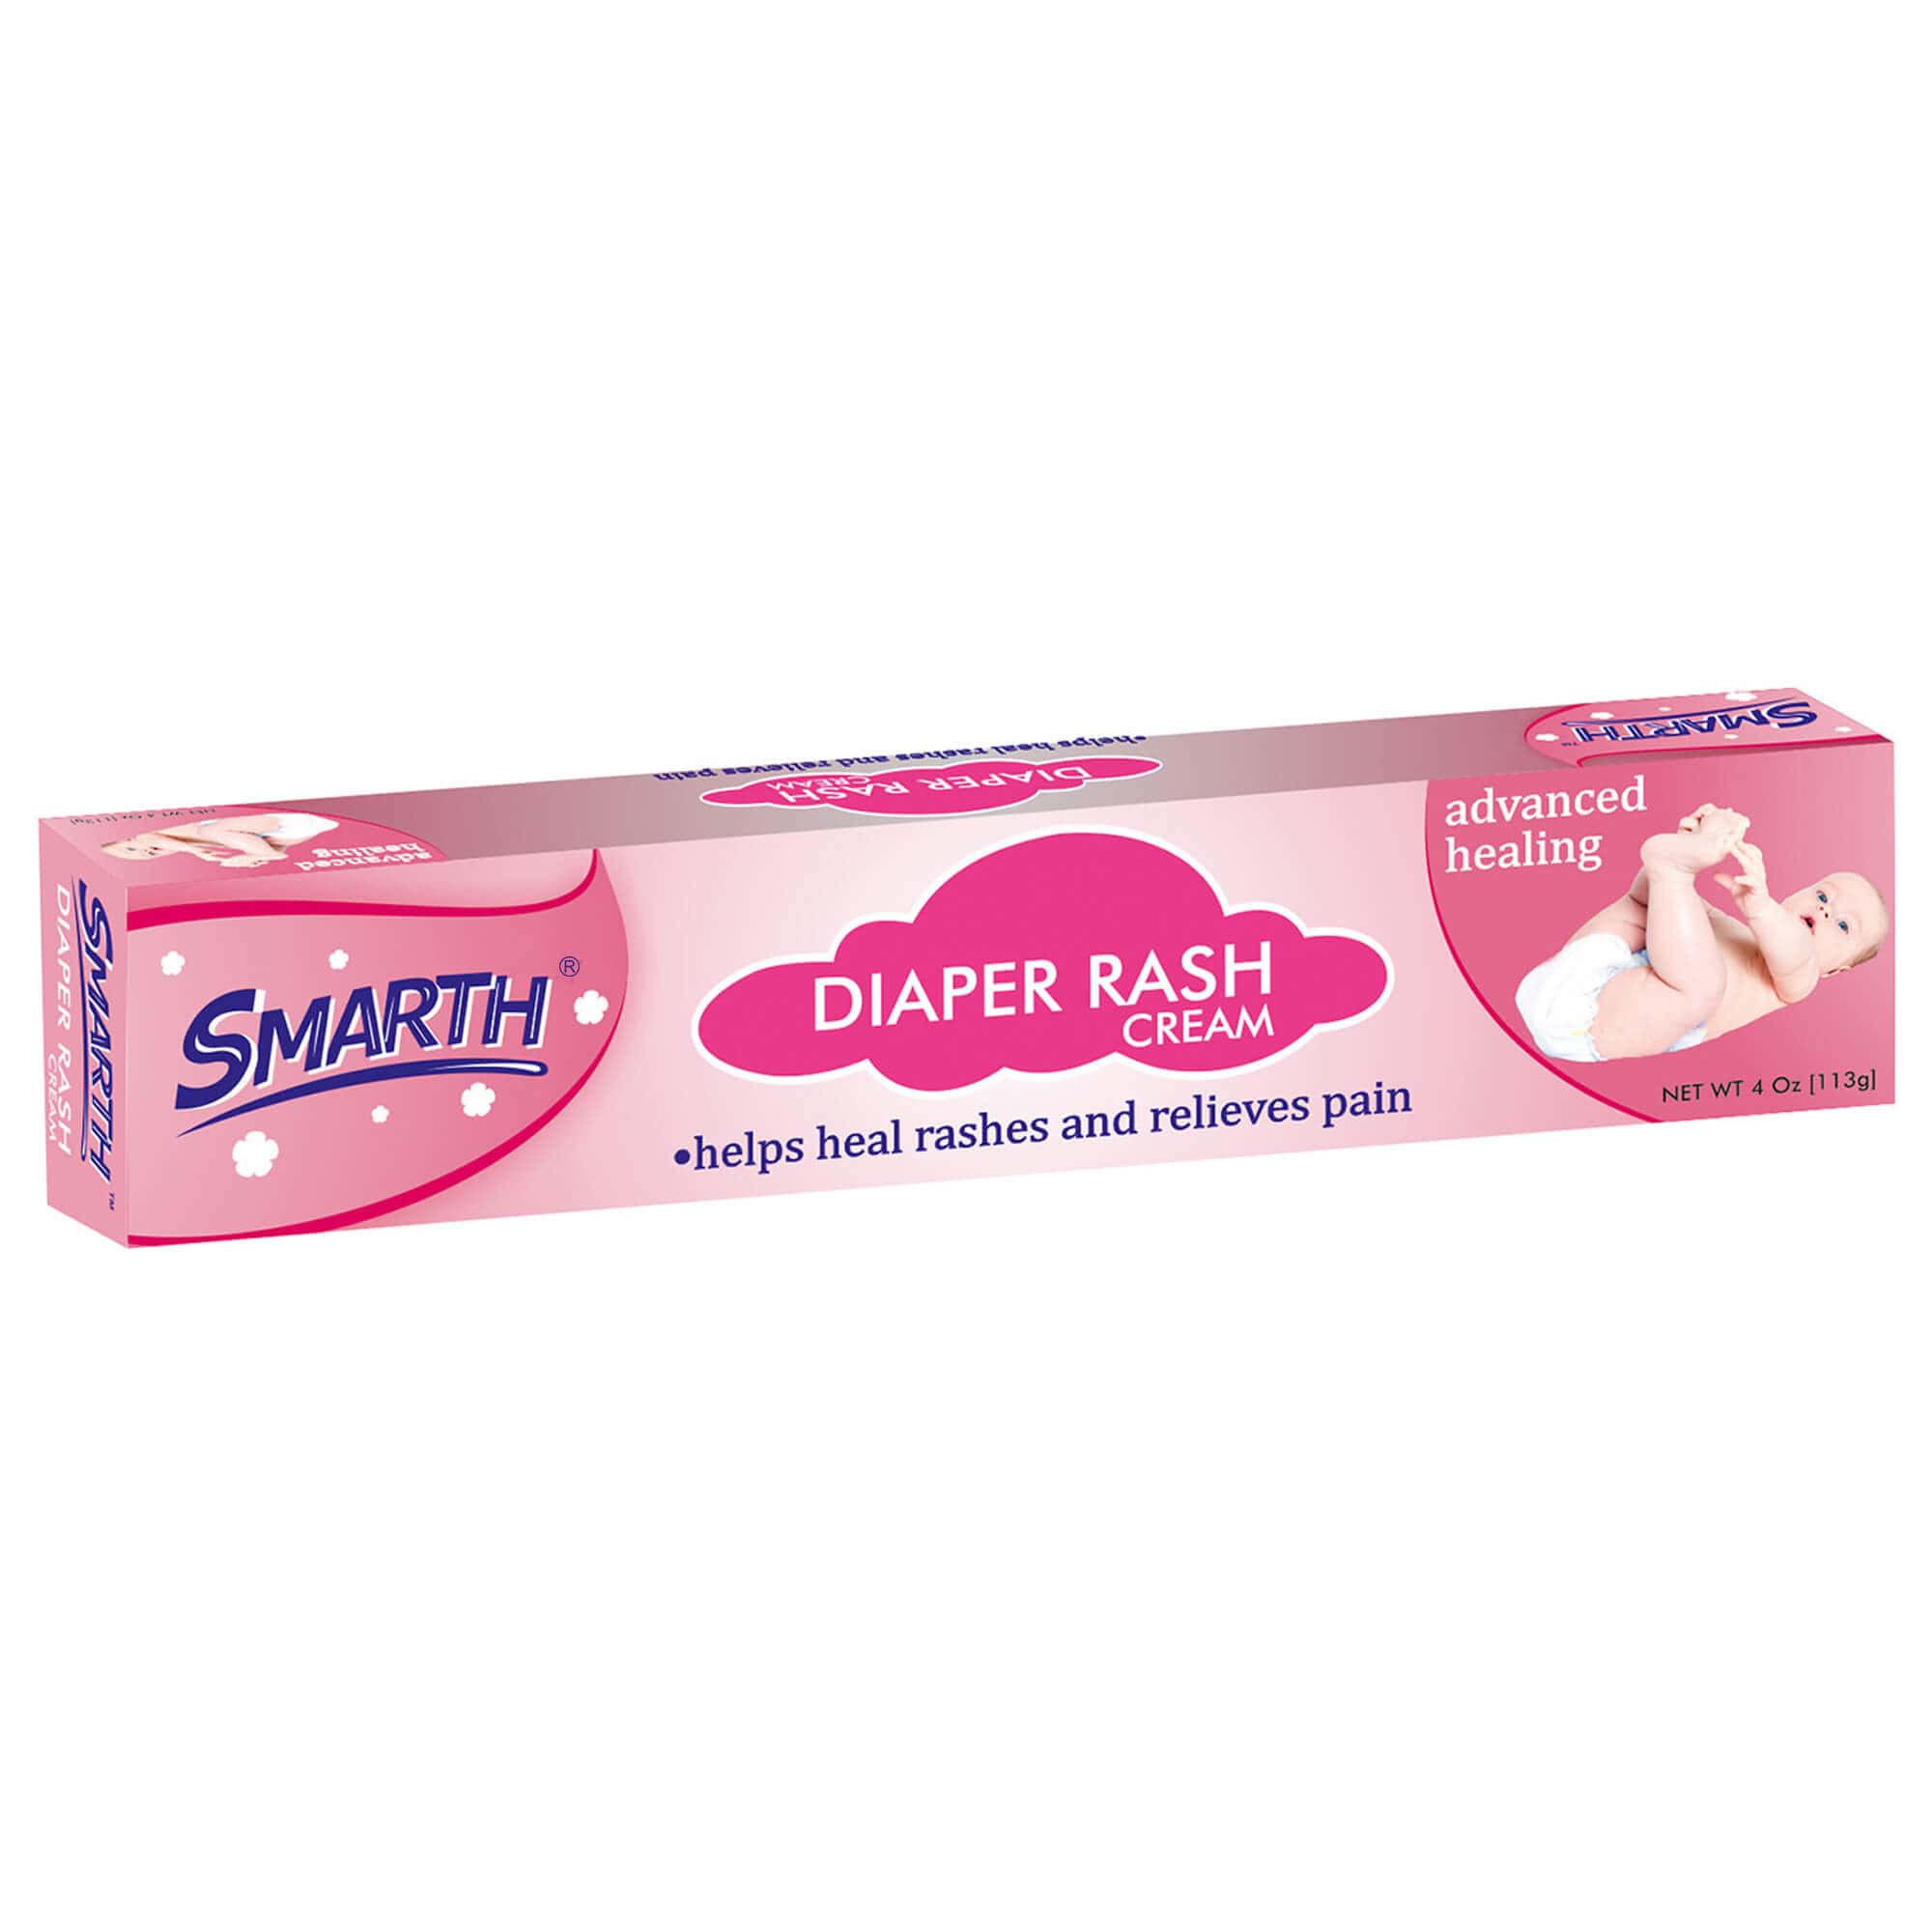 Diaper Rash Cream Premium